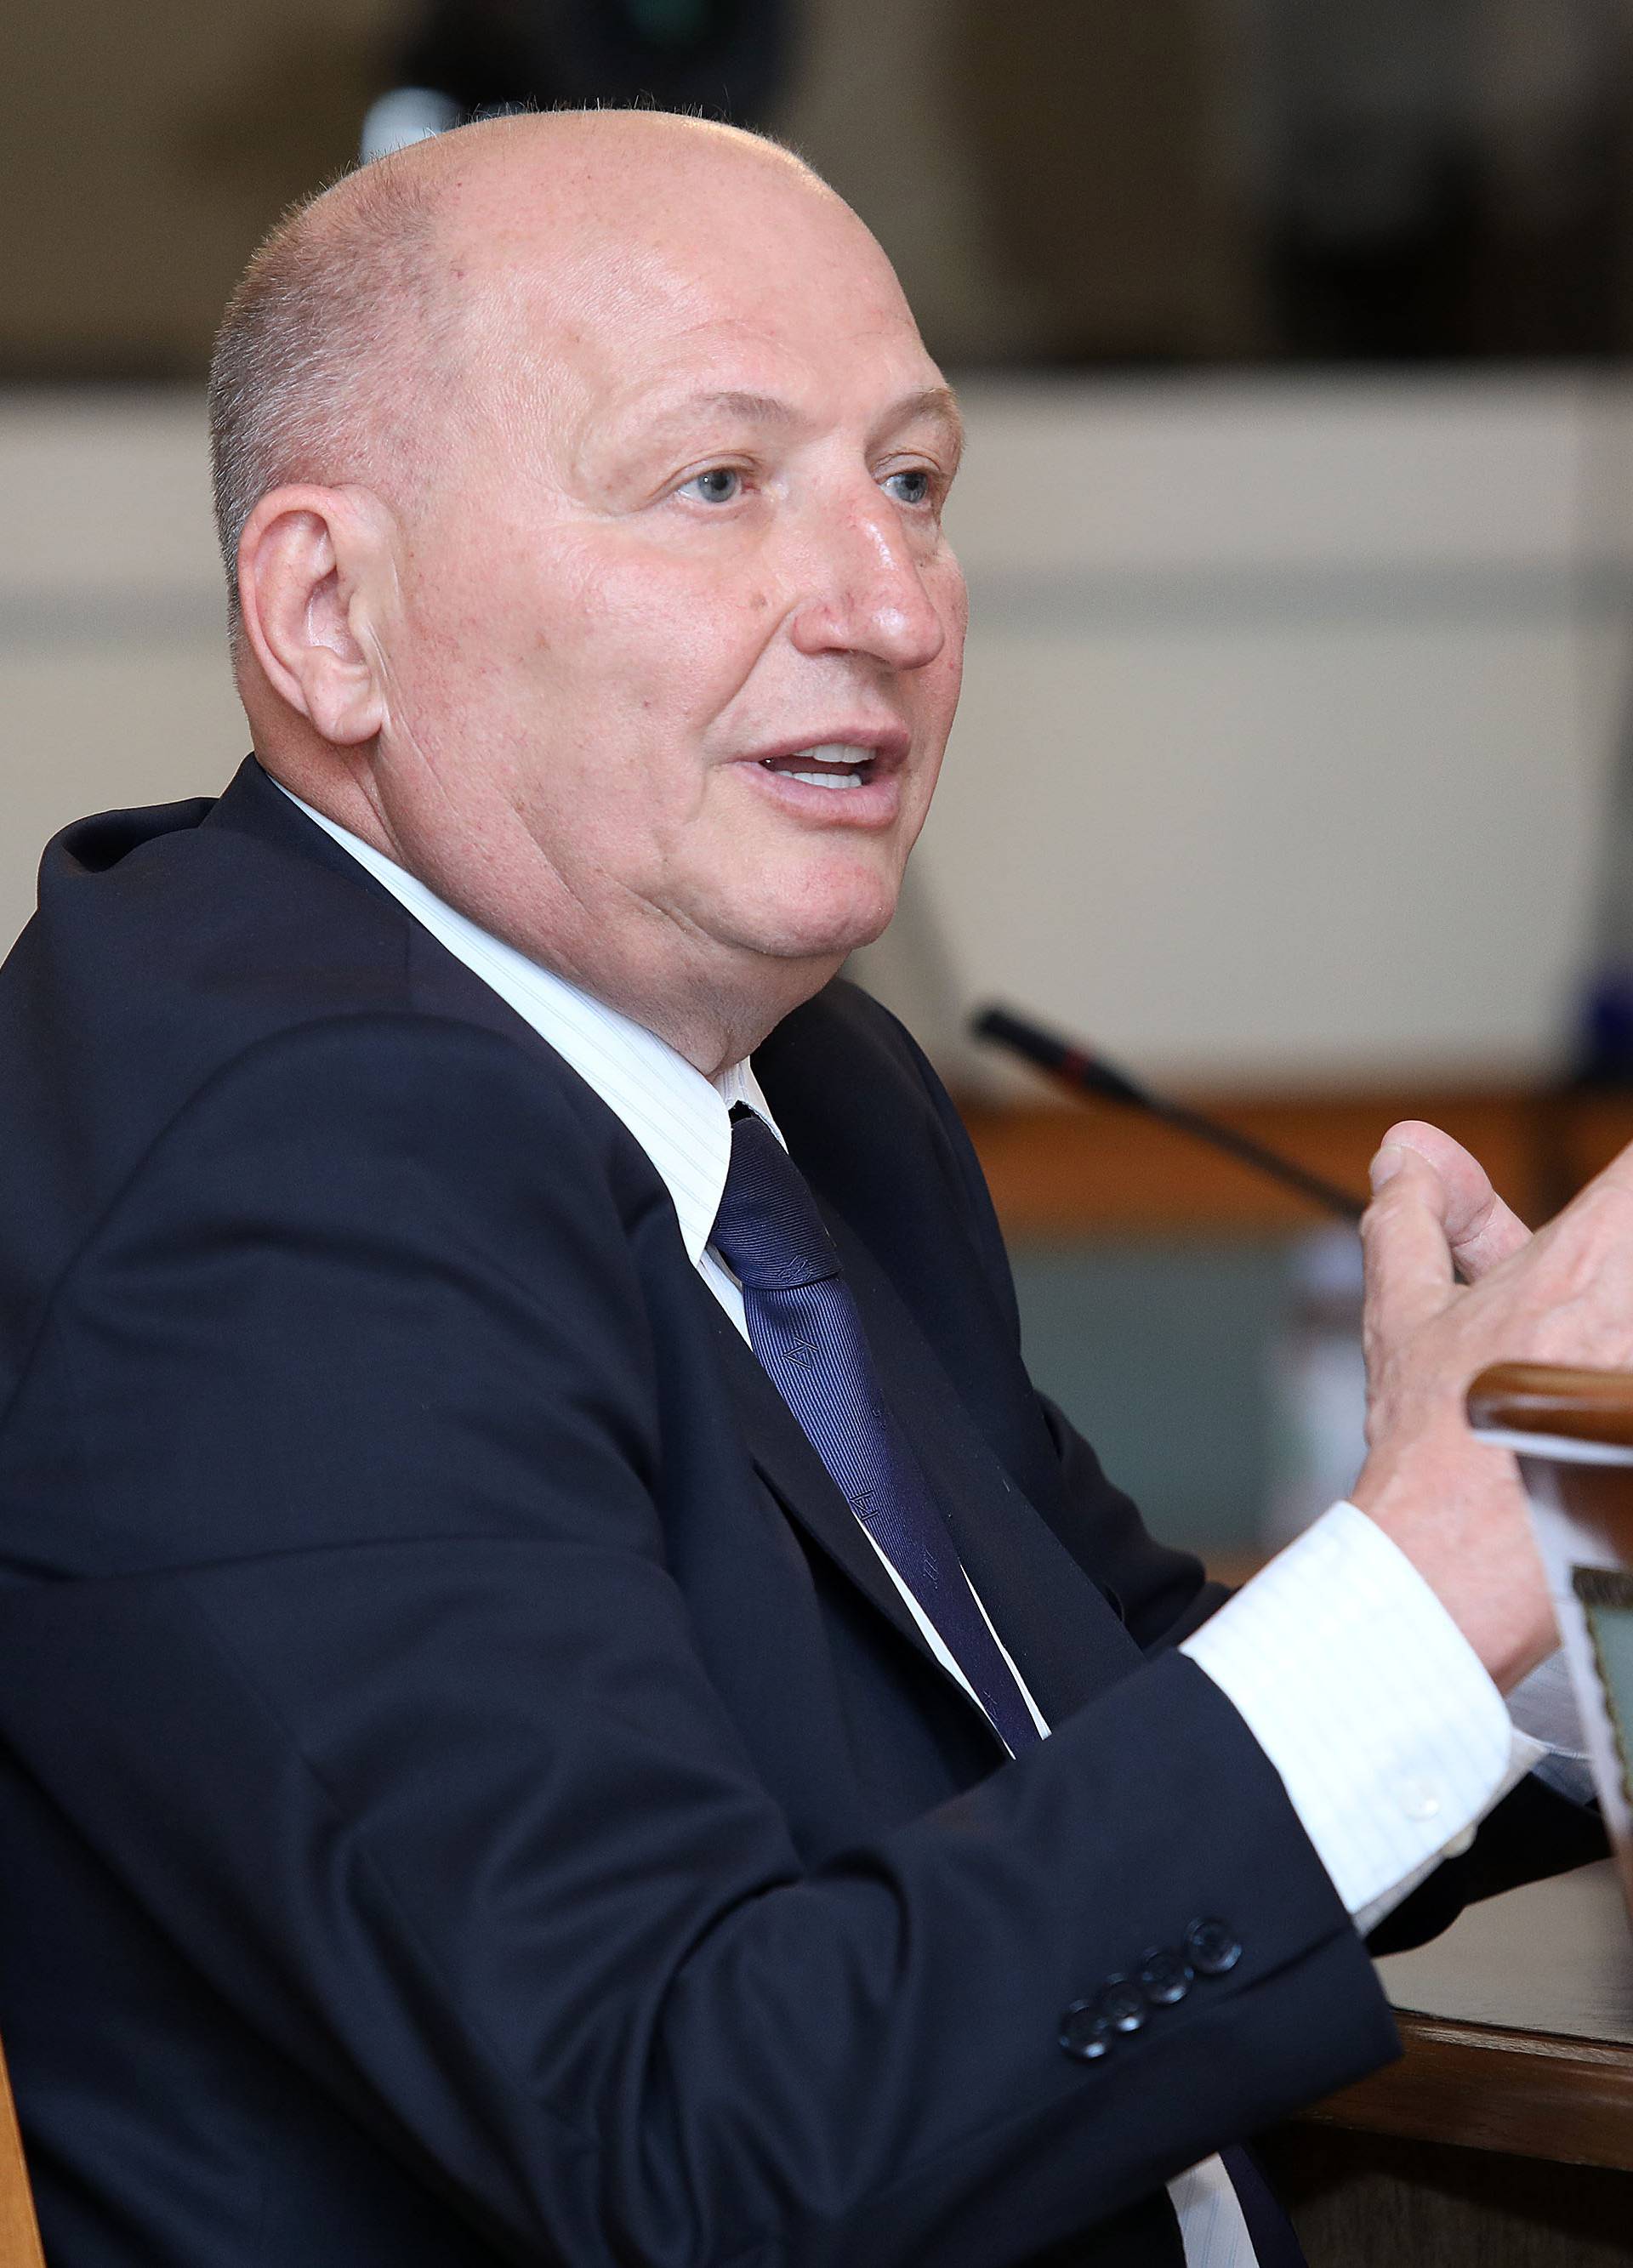 Šef Ustavnog suda Šeparović djelomično plagirao disertaciju